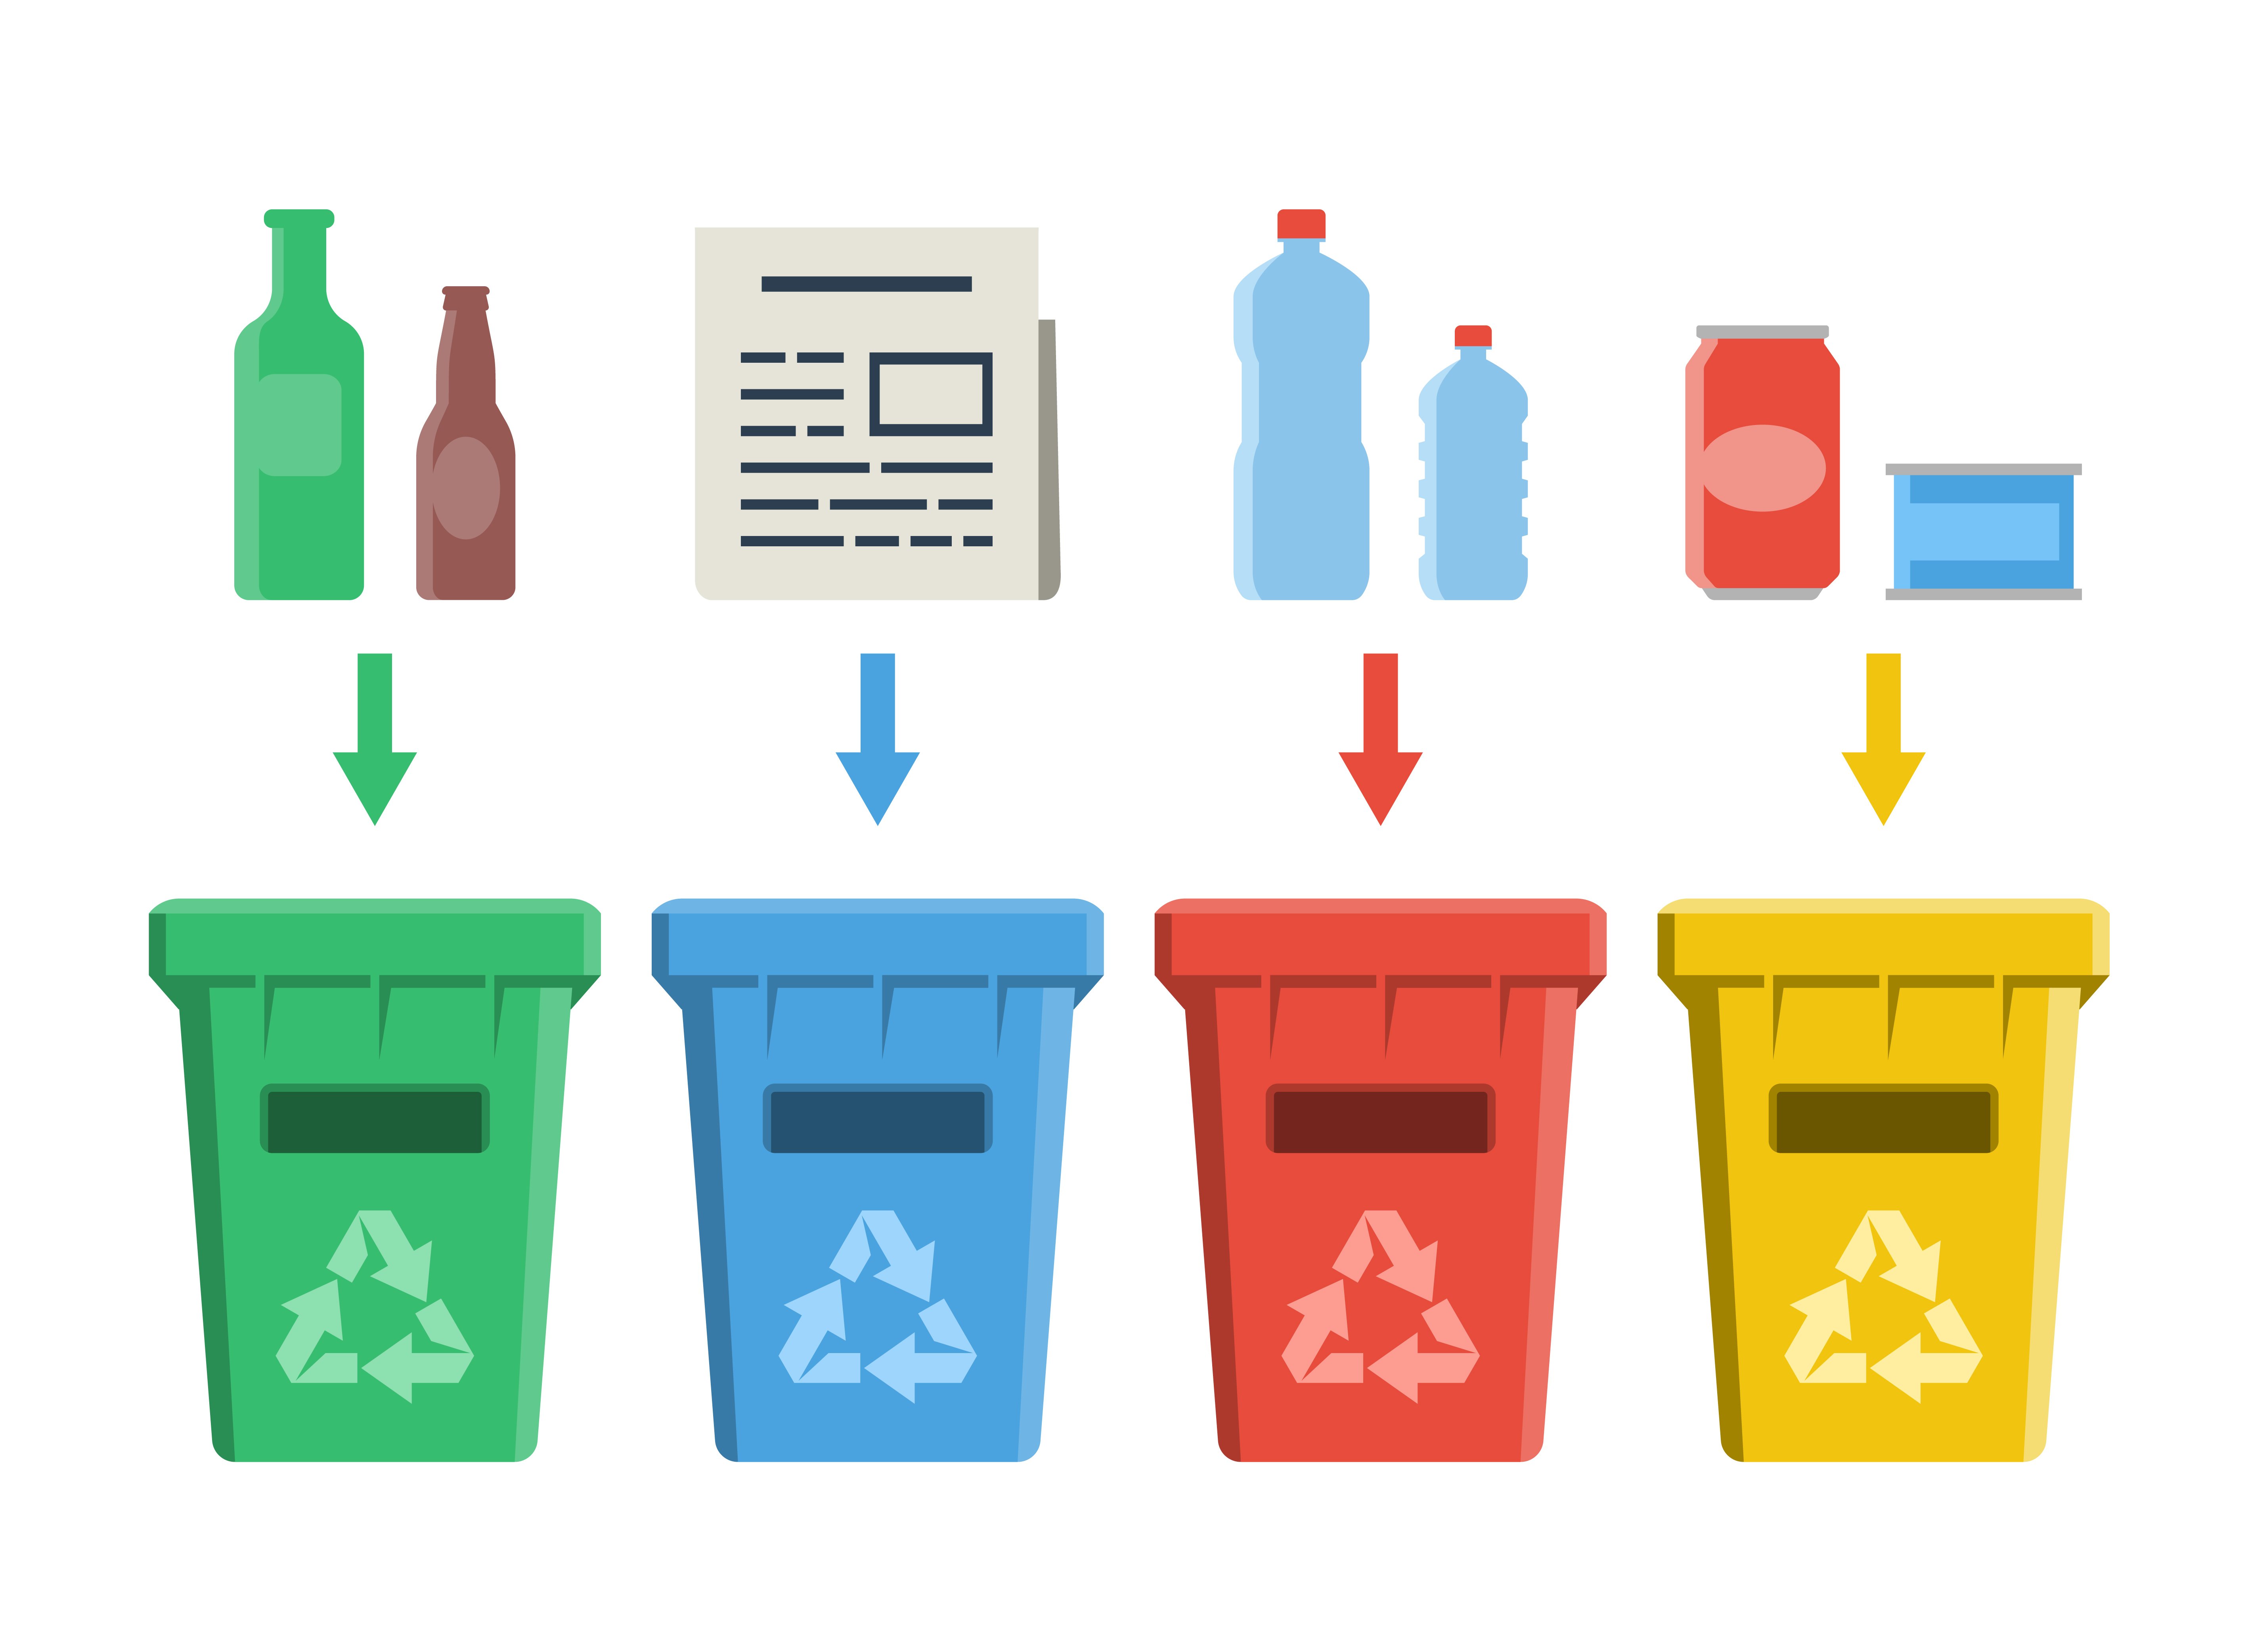 Raccolta differenziata in casa dei rifiuti: cosa posso